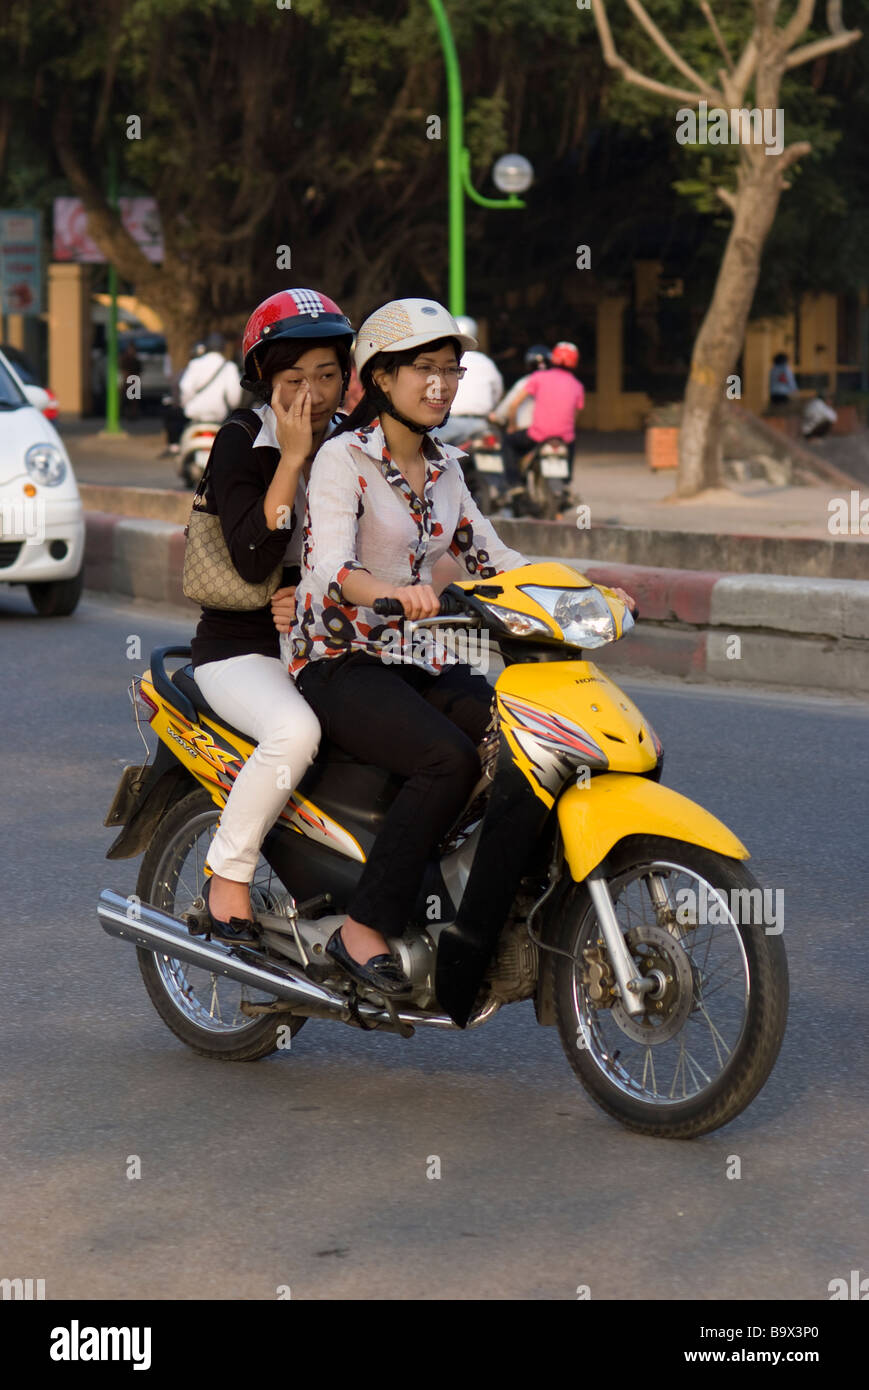 Two women riding a yellow Honda motorbike in Hanoi Vietnam Stock Photo